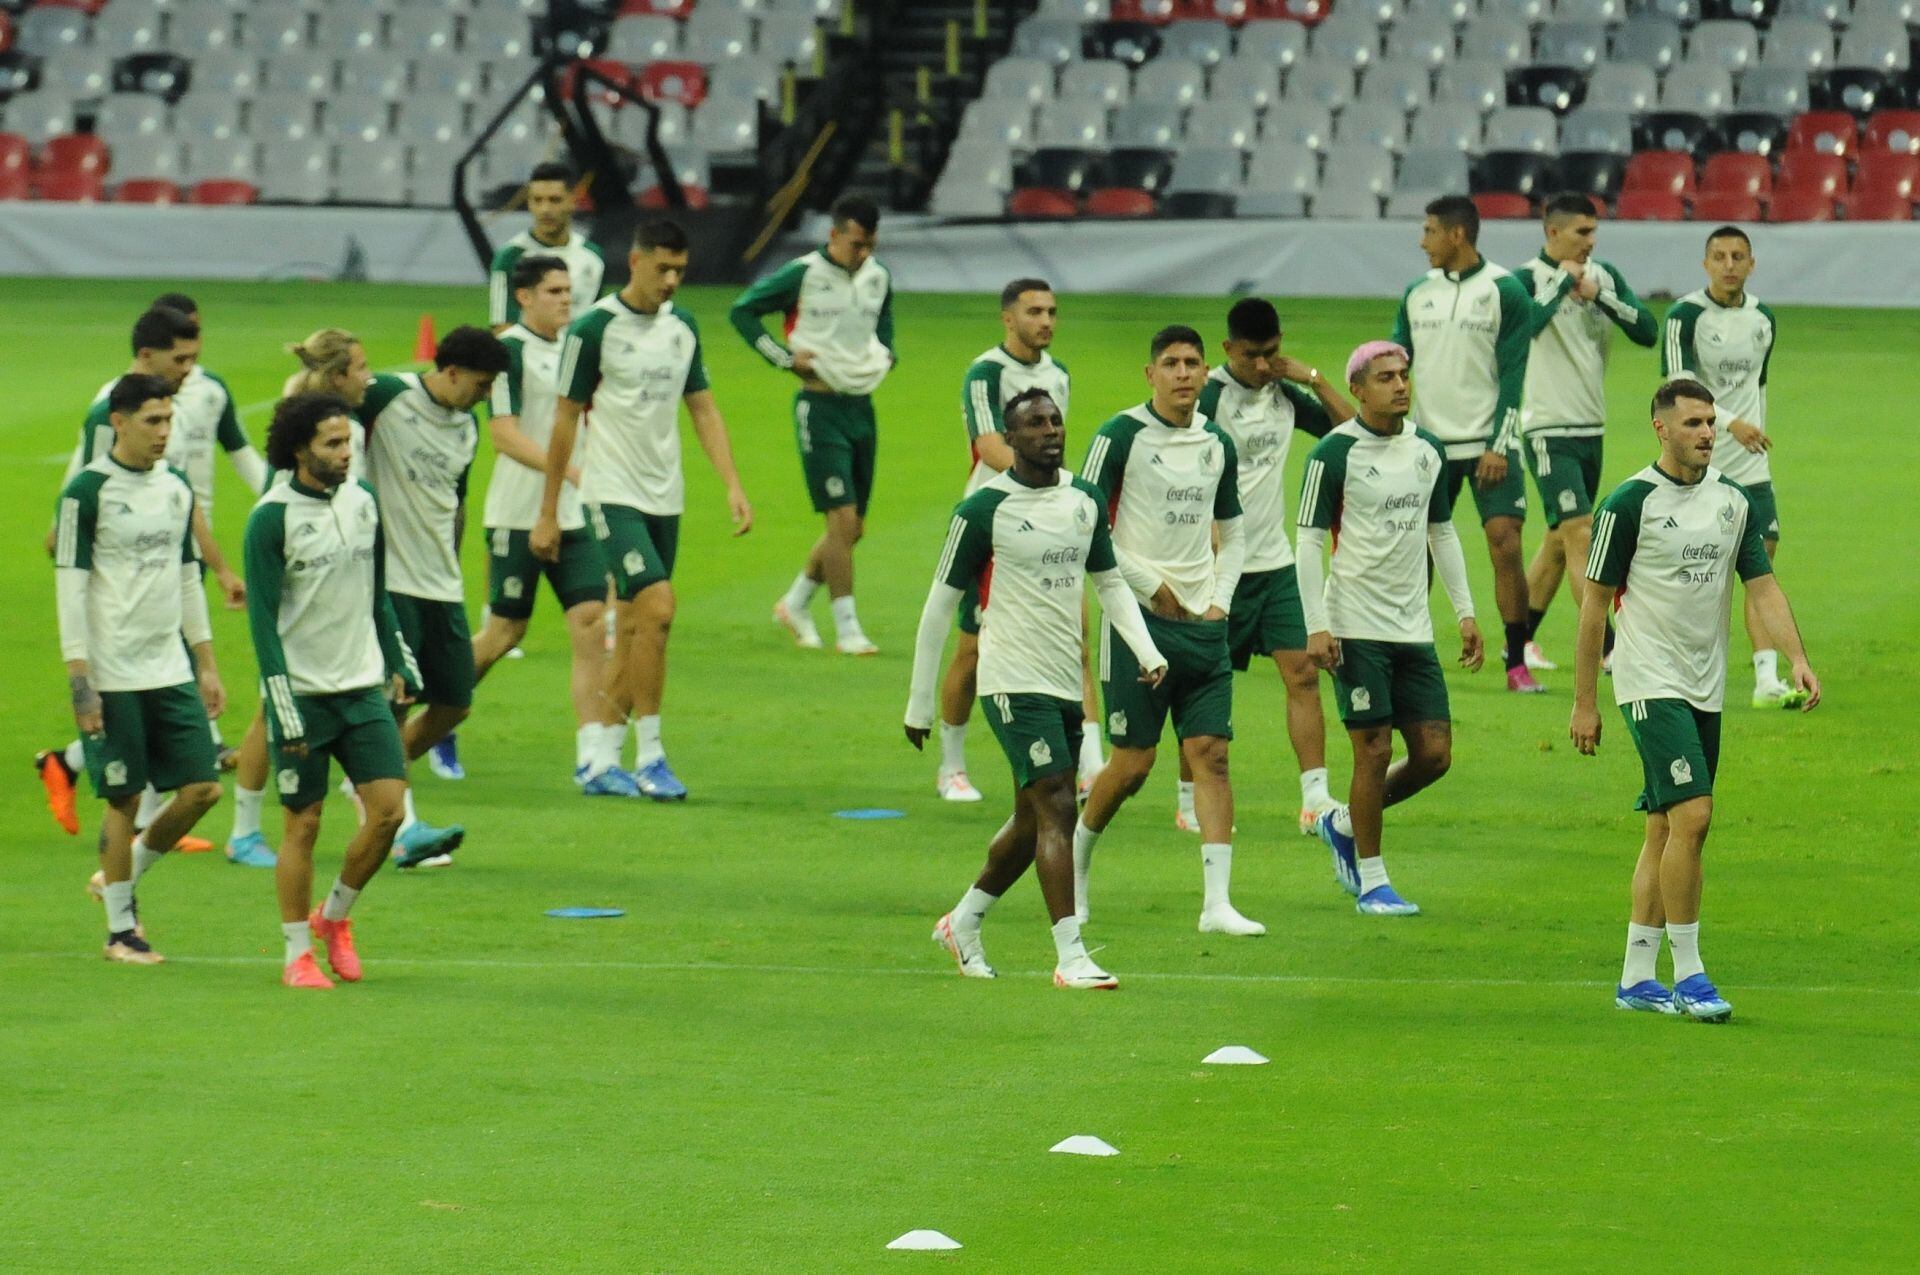 La selección mexicana entrena esta tarde en la cancha del Estadio Azteca previo a su encuentro con la selección de Honduras